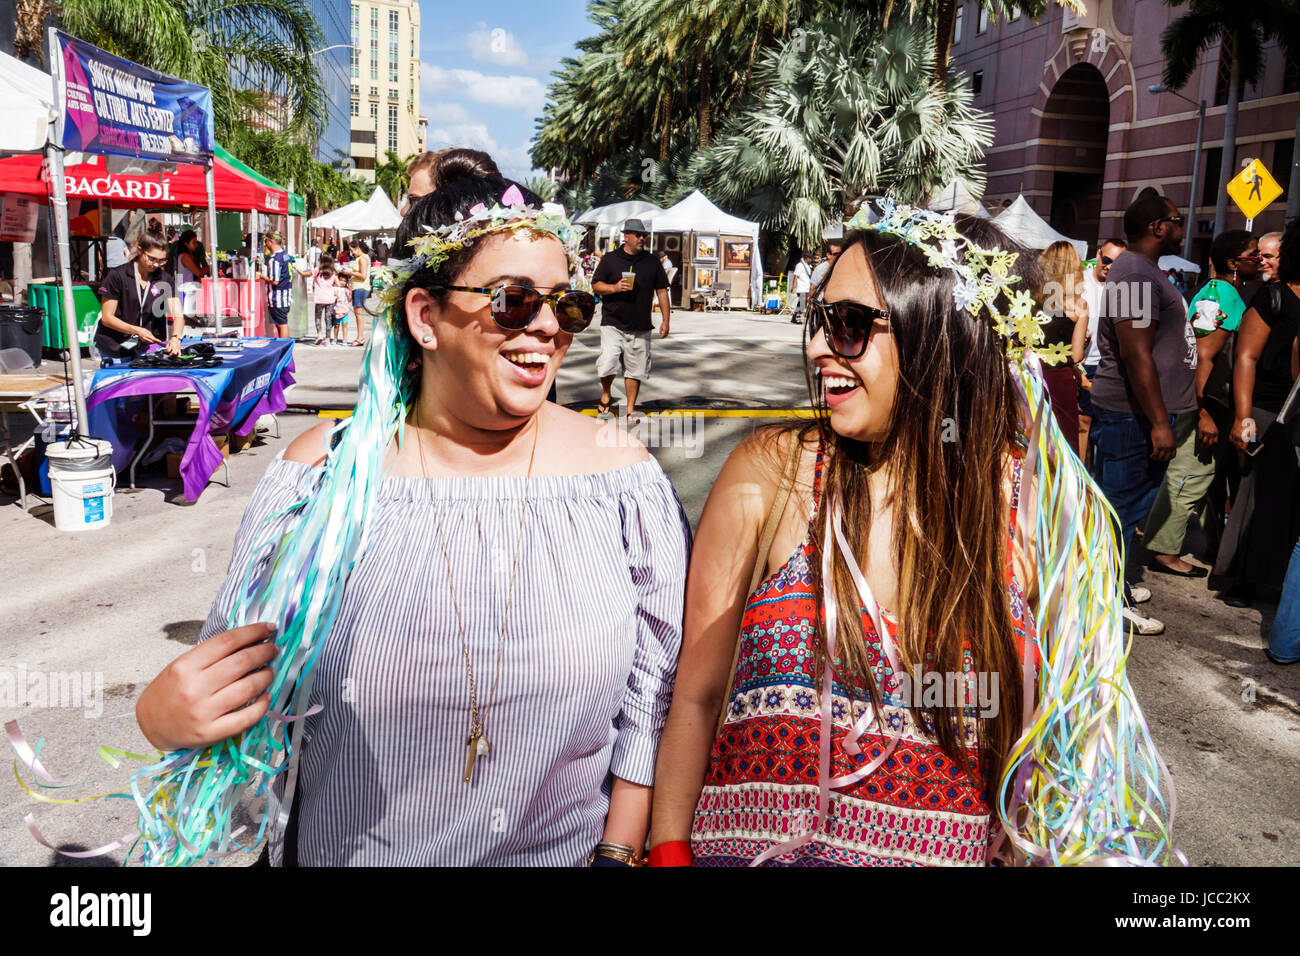 Florida Coral Gables,Miami,Carnevale Miami,carnevale,festival di strada,celebrazione culturale latina,donne donne femminili,amici ispanici,passeggiate,passeggiate,gi Foto Stock